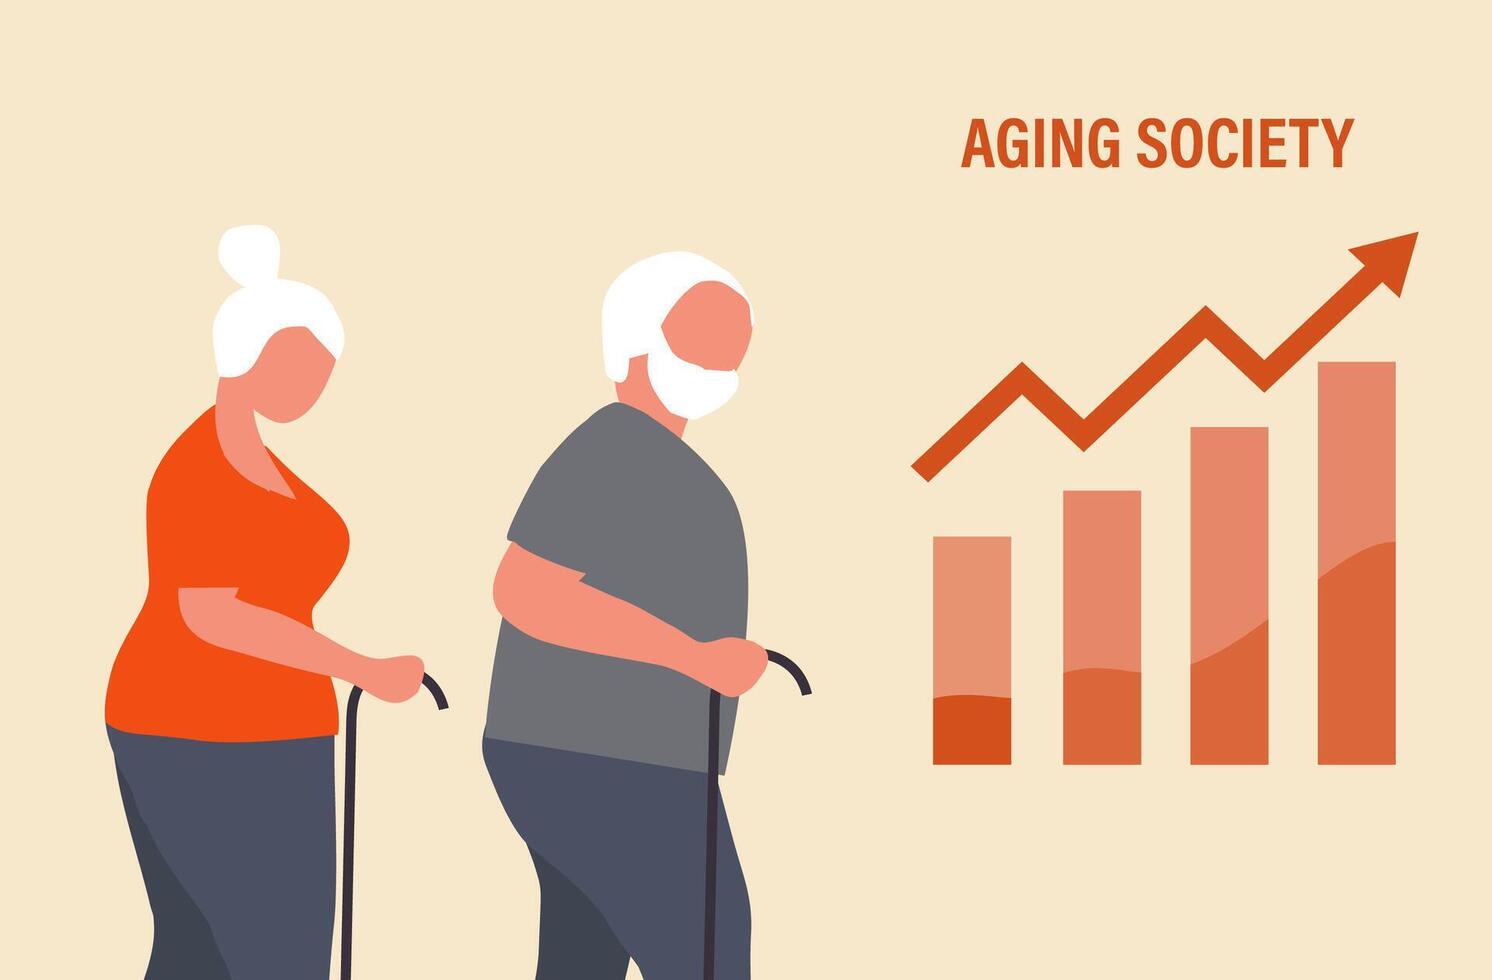 vieillissement société concept, monde population vieillissement car de faible naissance. en augmentant Sénior personnes âgées gens vecteur illustration